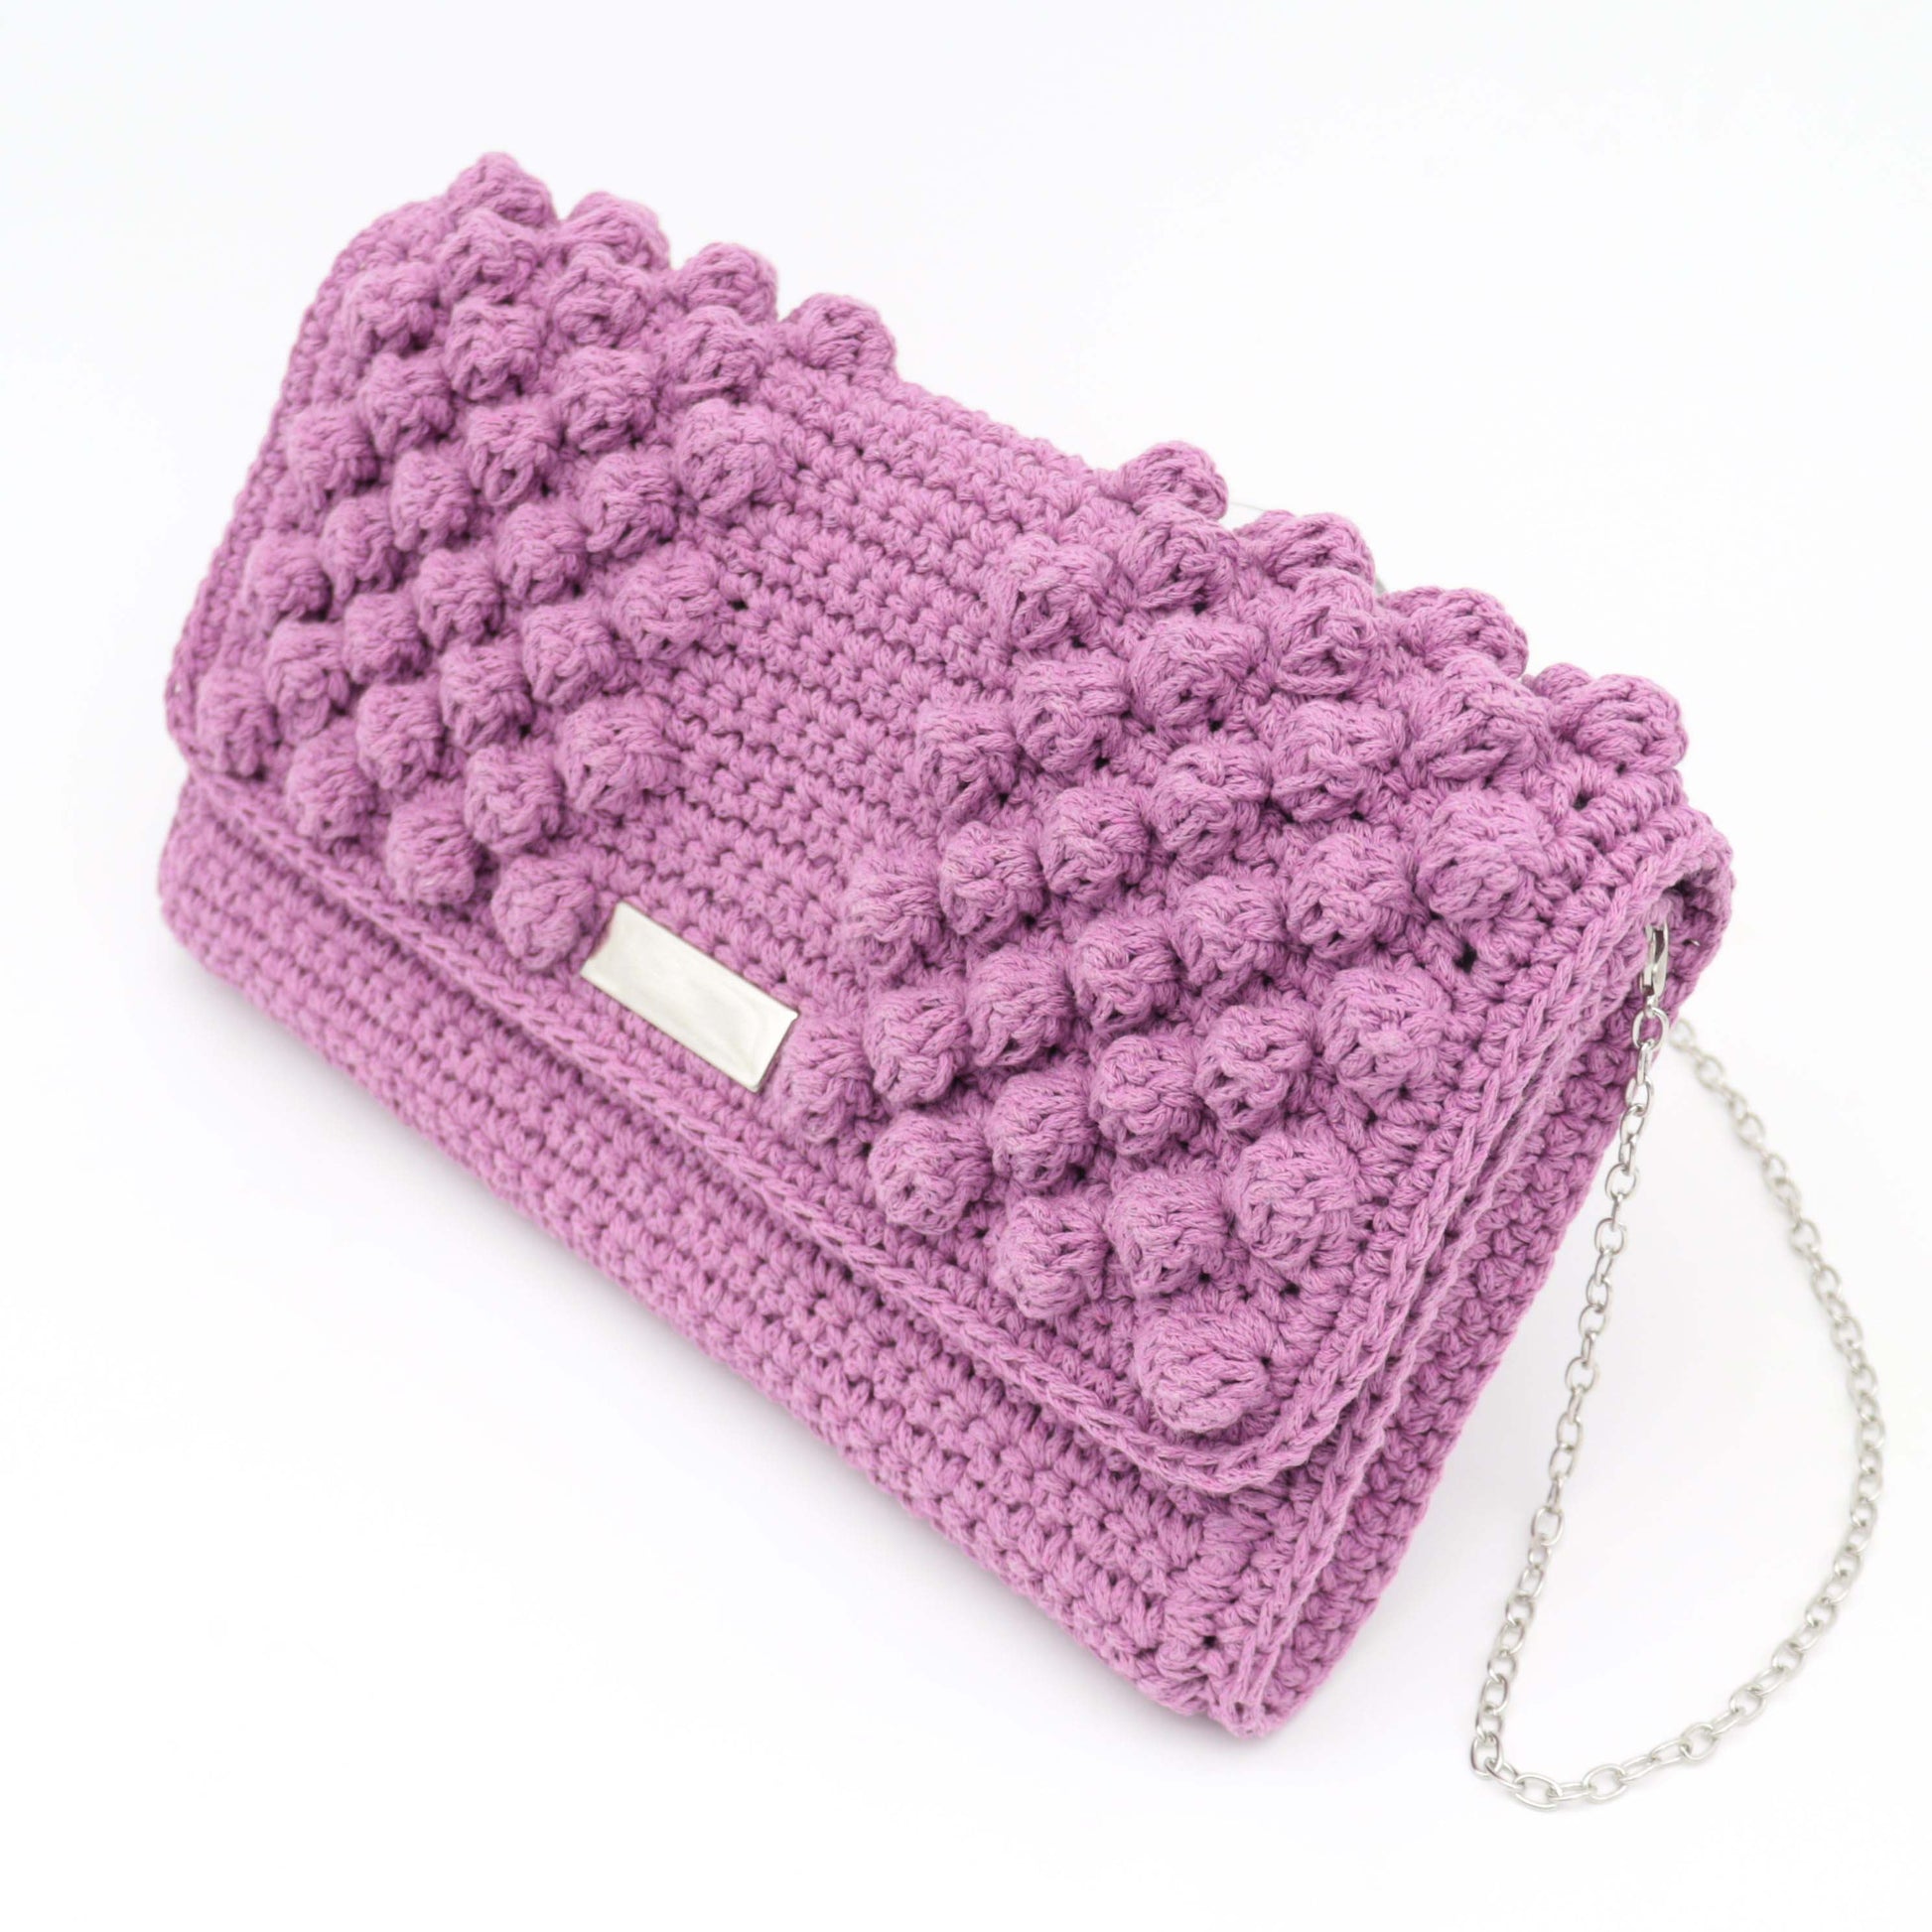 sappho clutch bag by kiki crochet patterns